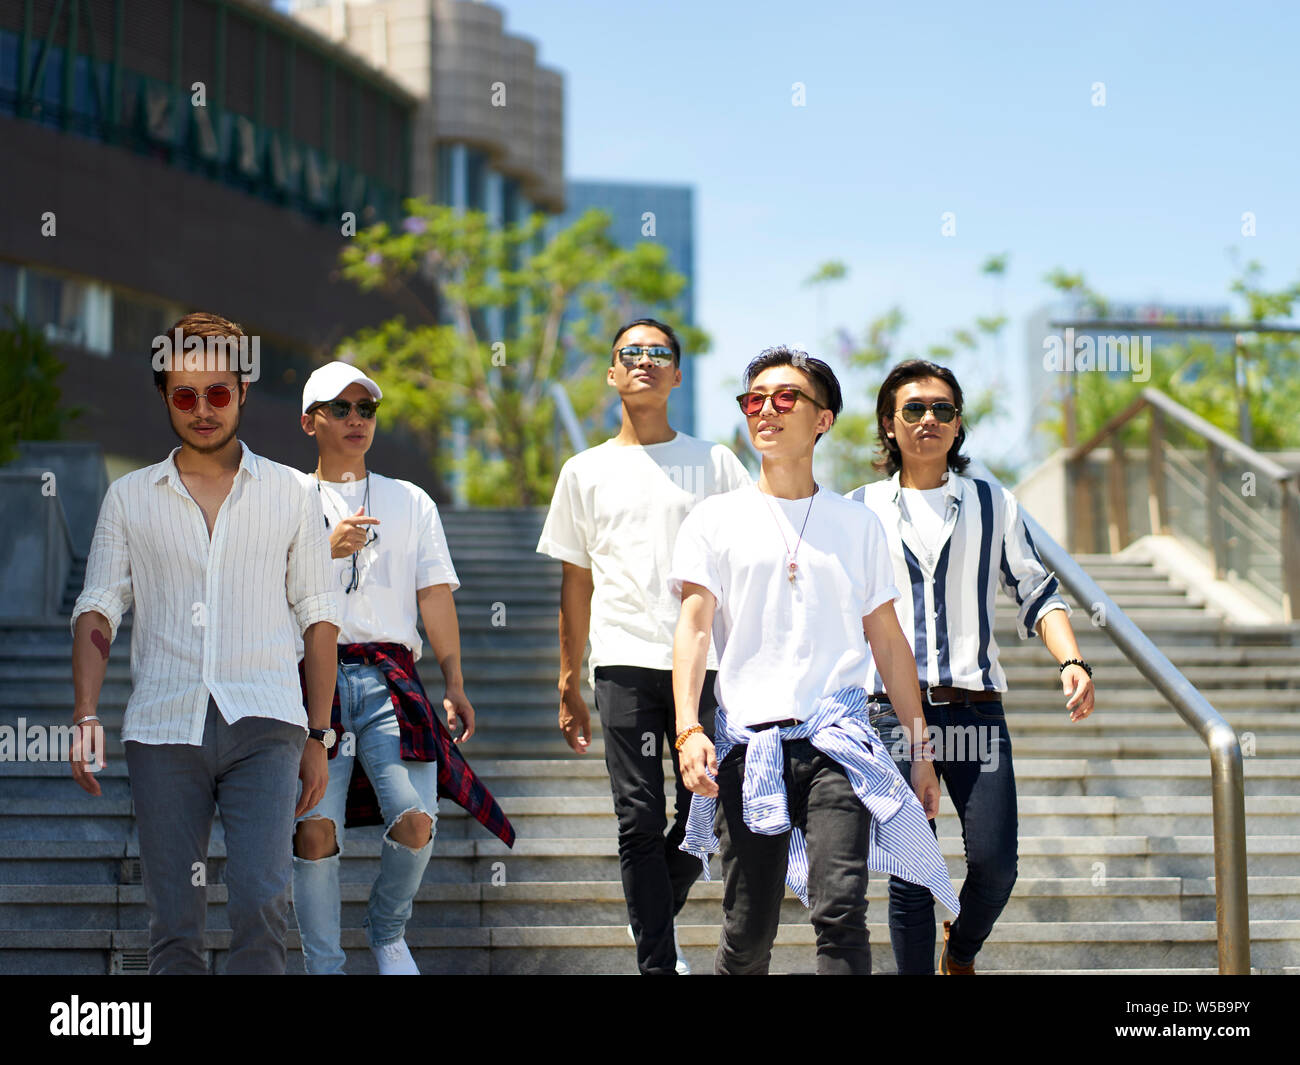 Un groupe de cinq jeunes adultes asiatiques traînant ensemble walking on street Banque D'Images